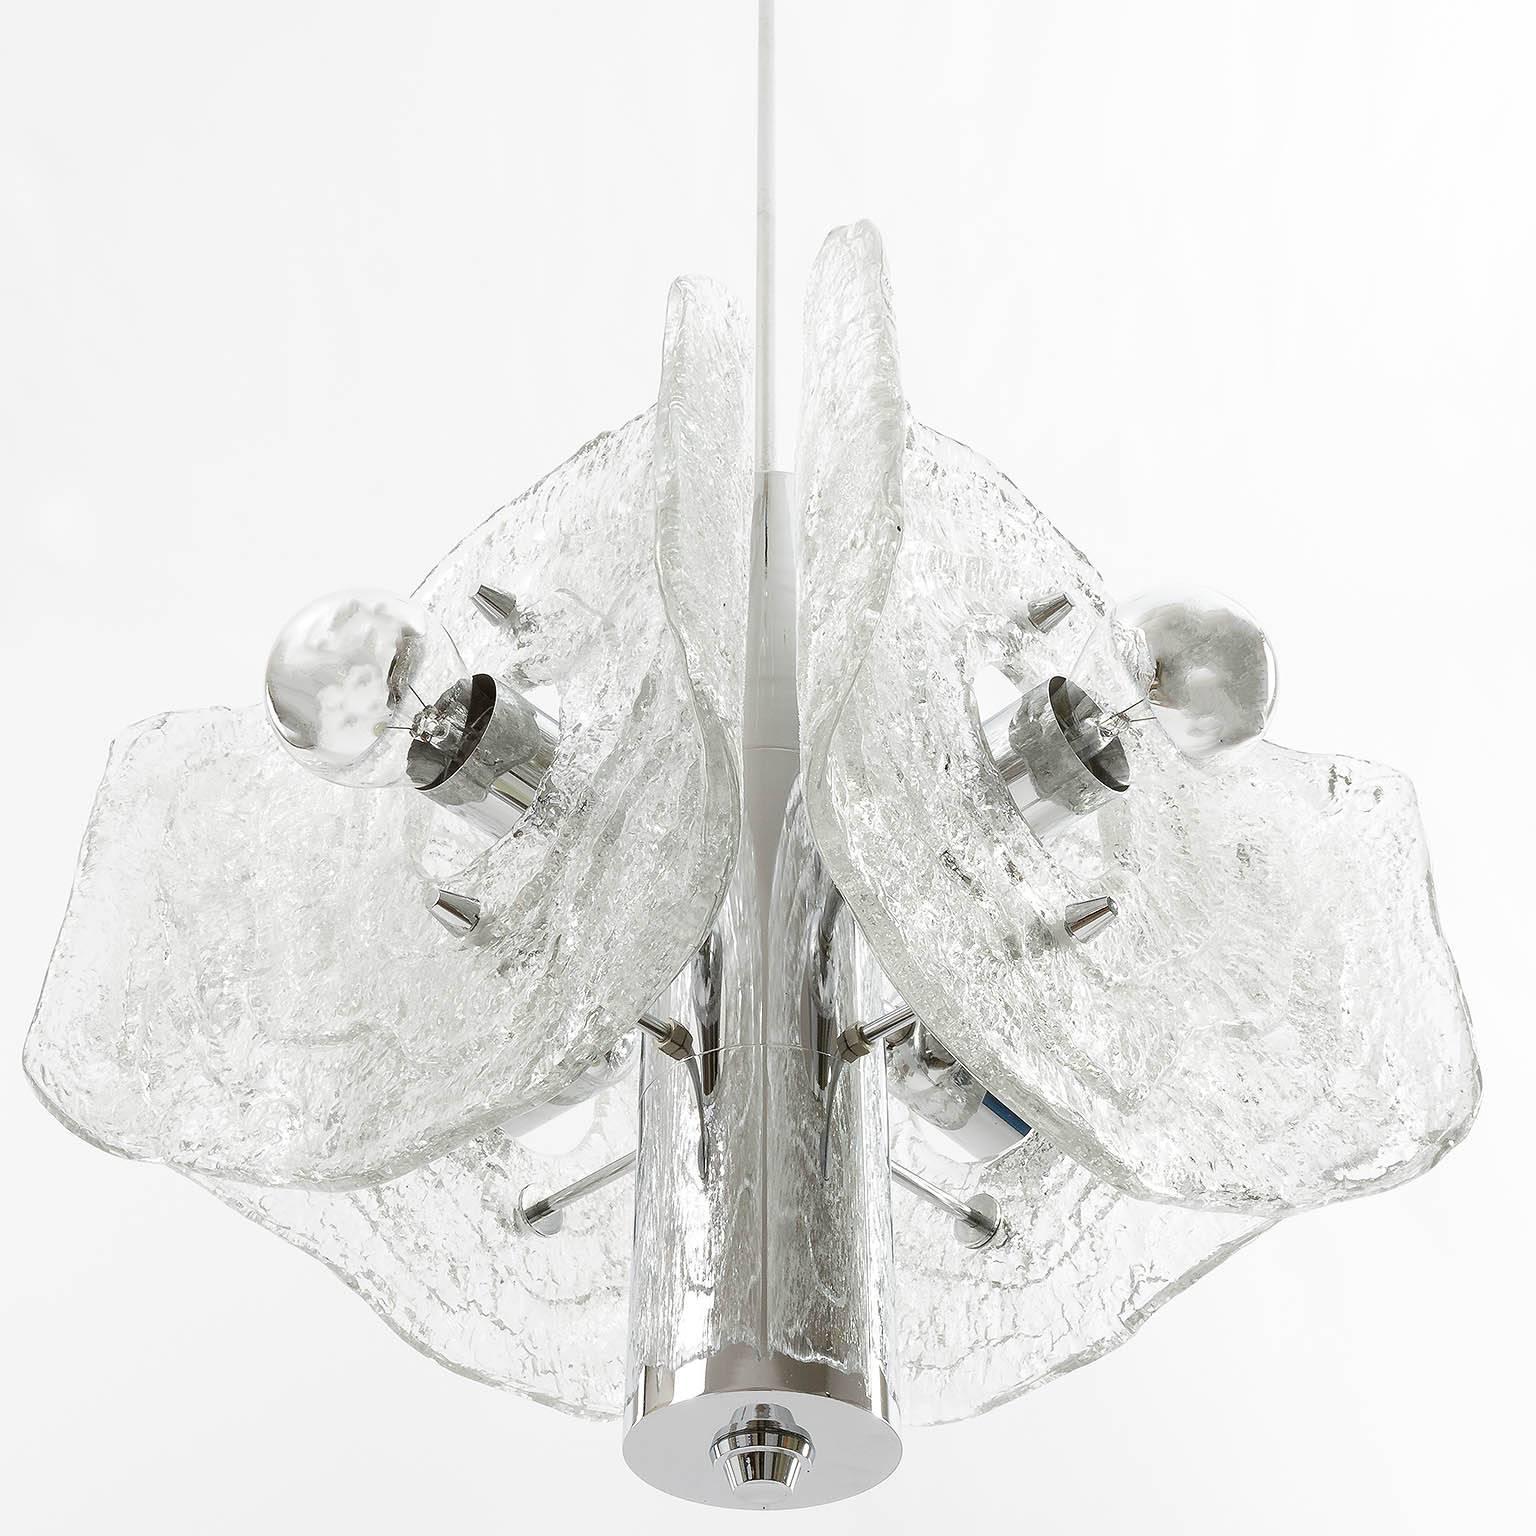 Lustre / suspension du milieu du siècle par Kalmar, fabriqué dans les années 1970. Une monture chromée accueille quatre verres dépolis en forme de feuilles. Elle accepte quatre ampoules à culot à vis moyen et fonctionne bien avec des ampoules